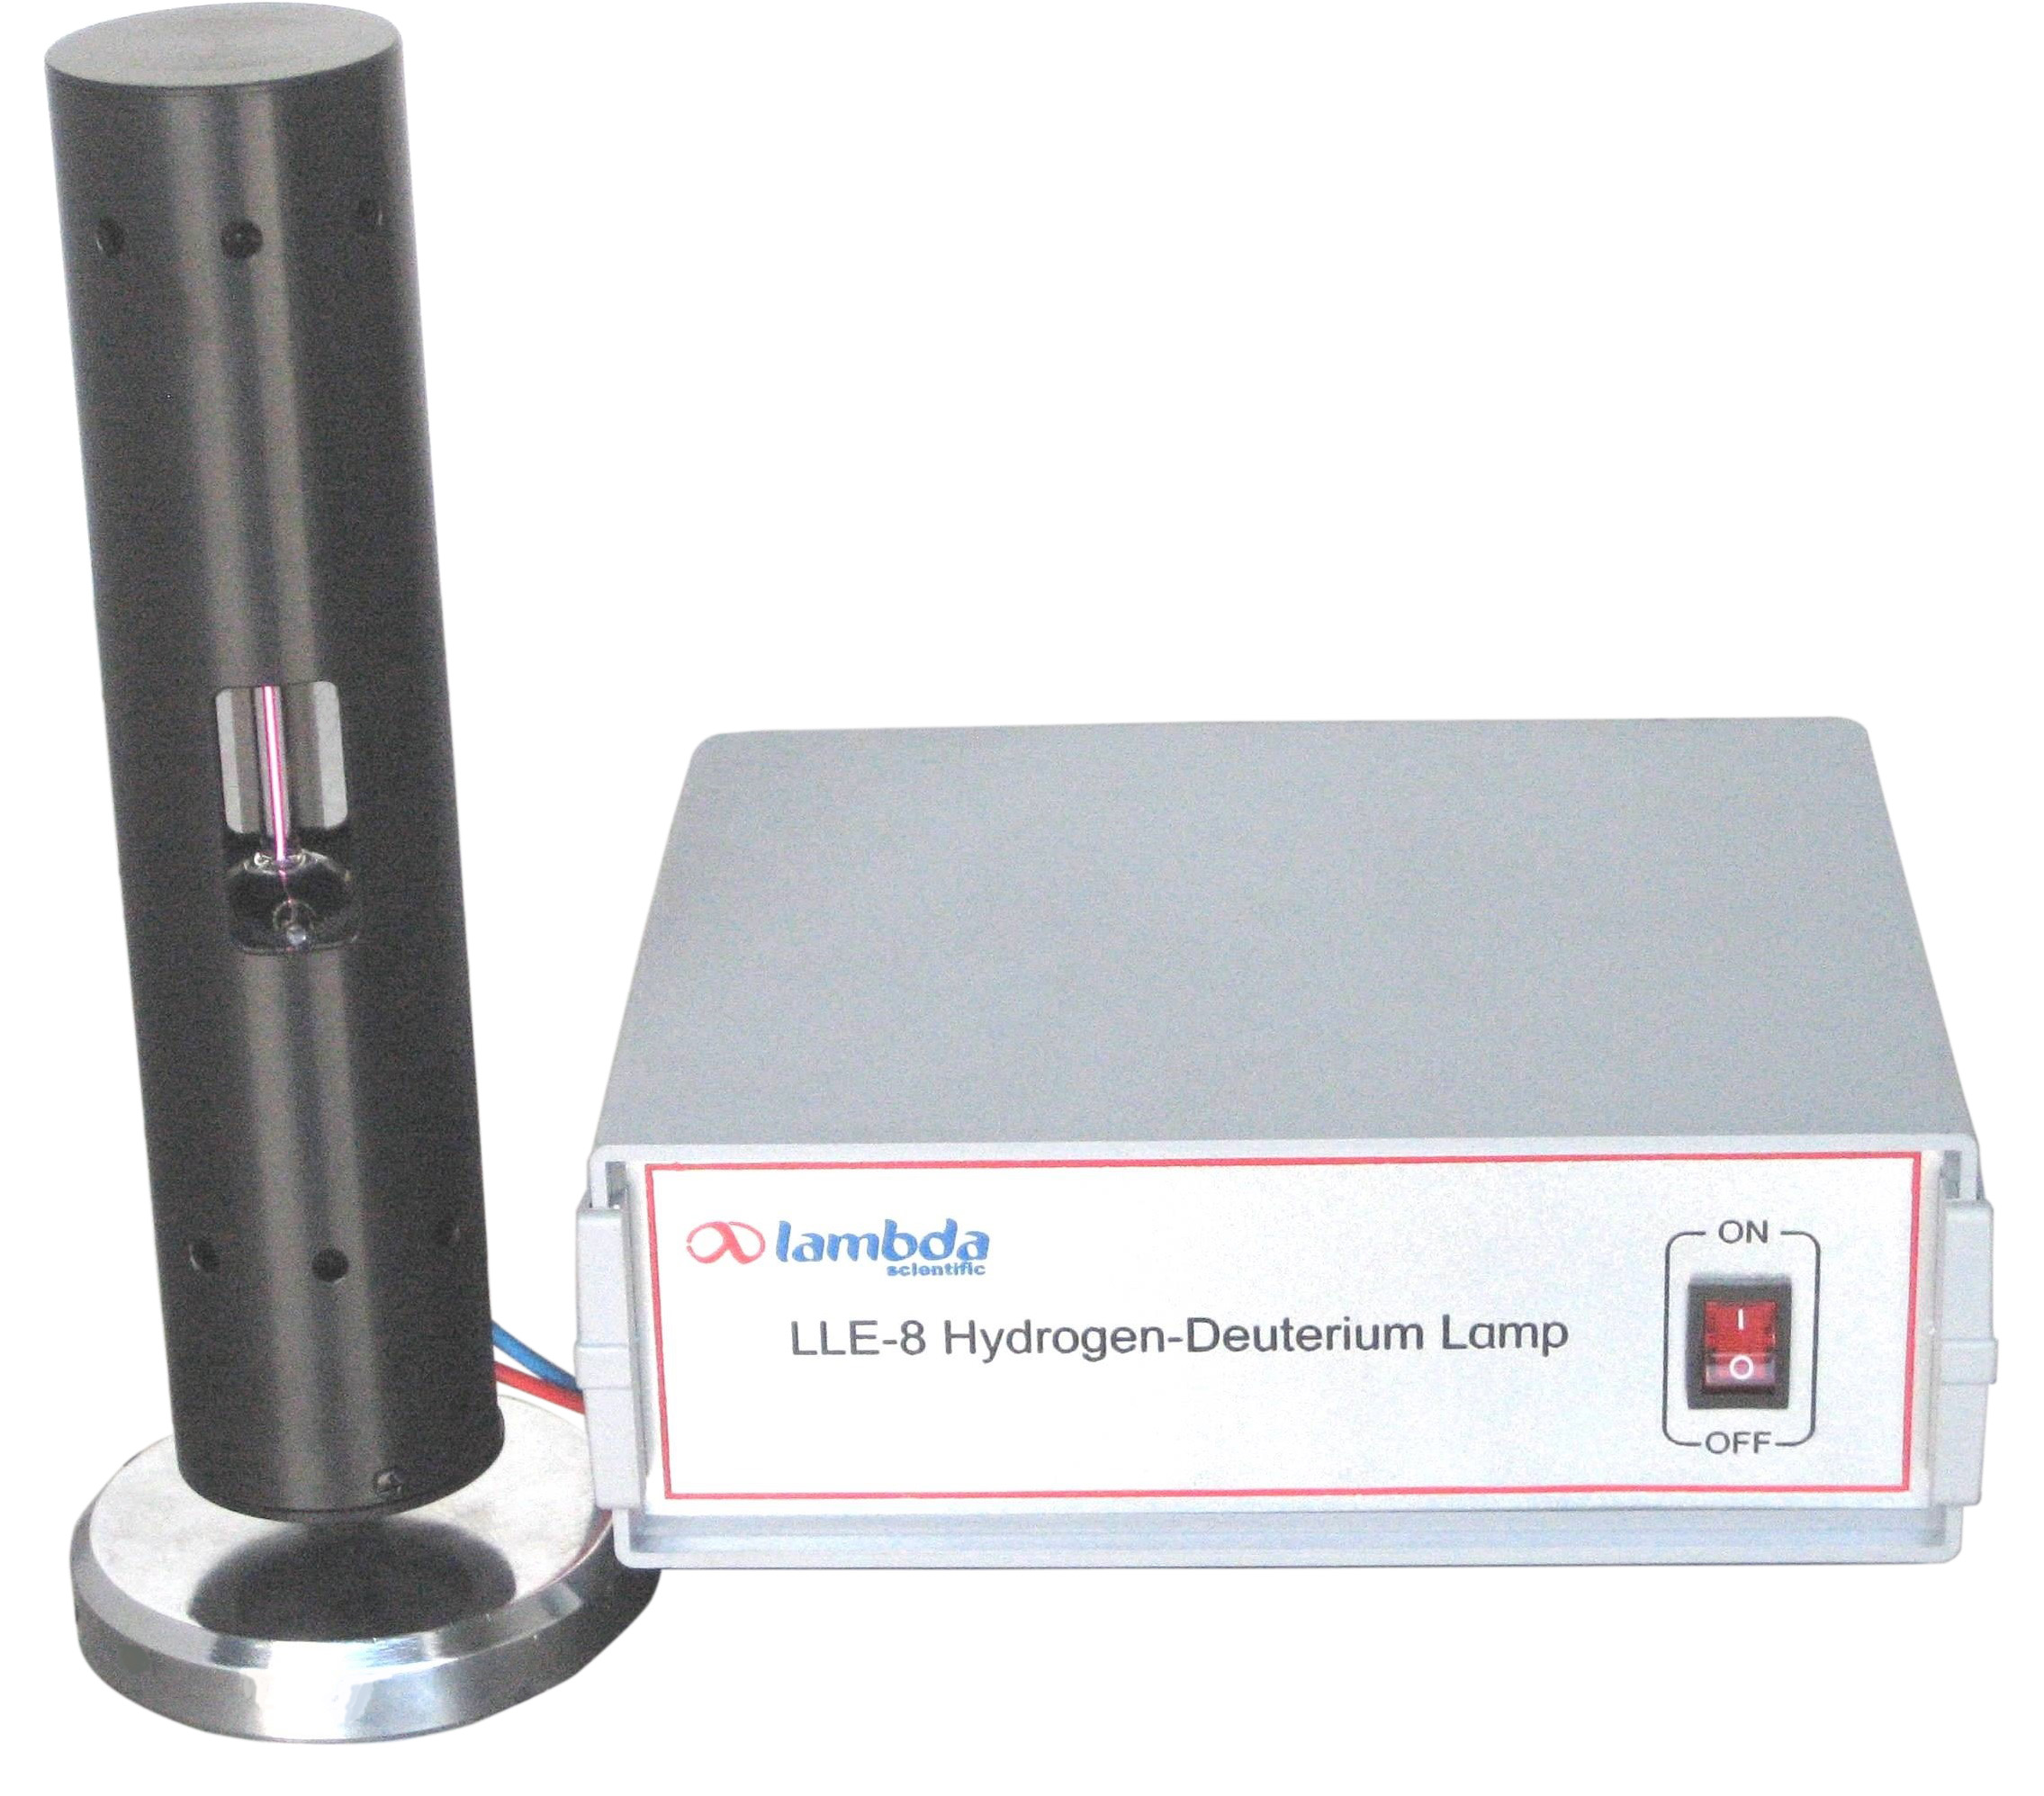 LLE-8 Hydrogen-Deuterium Lamp